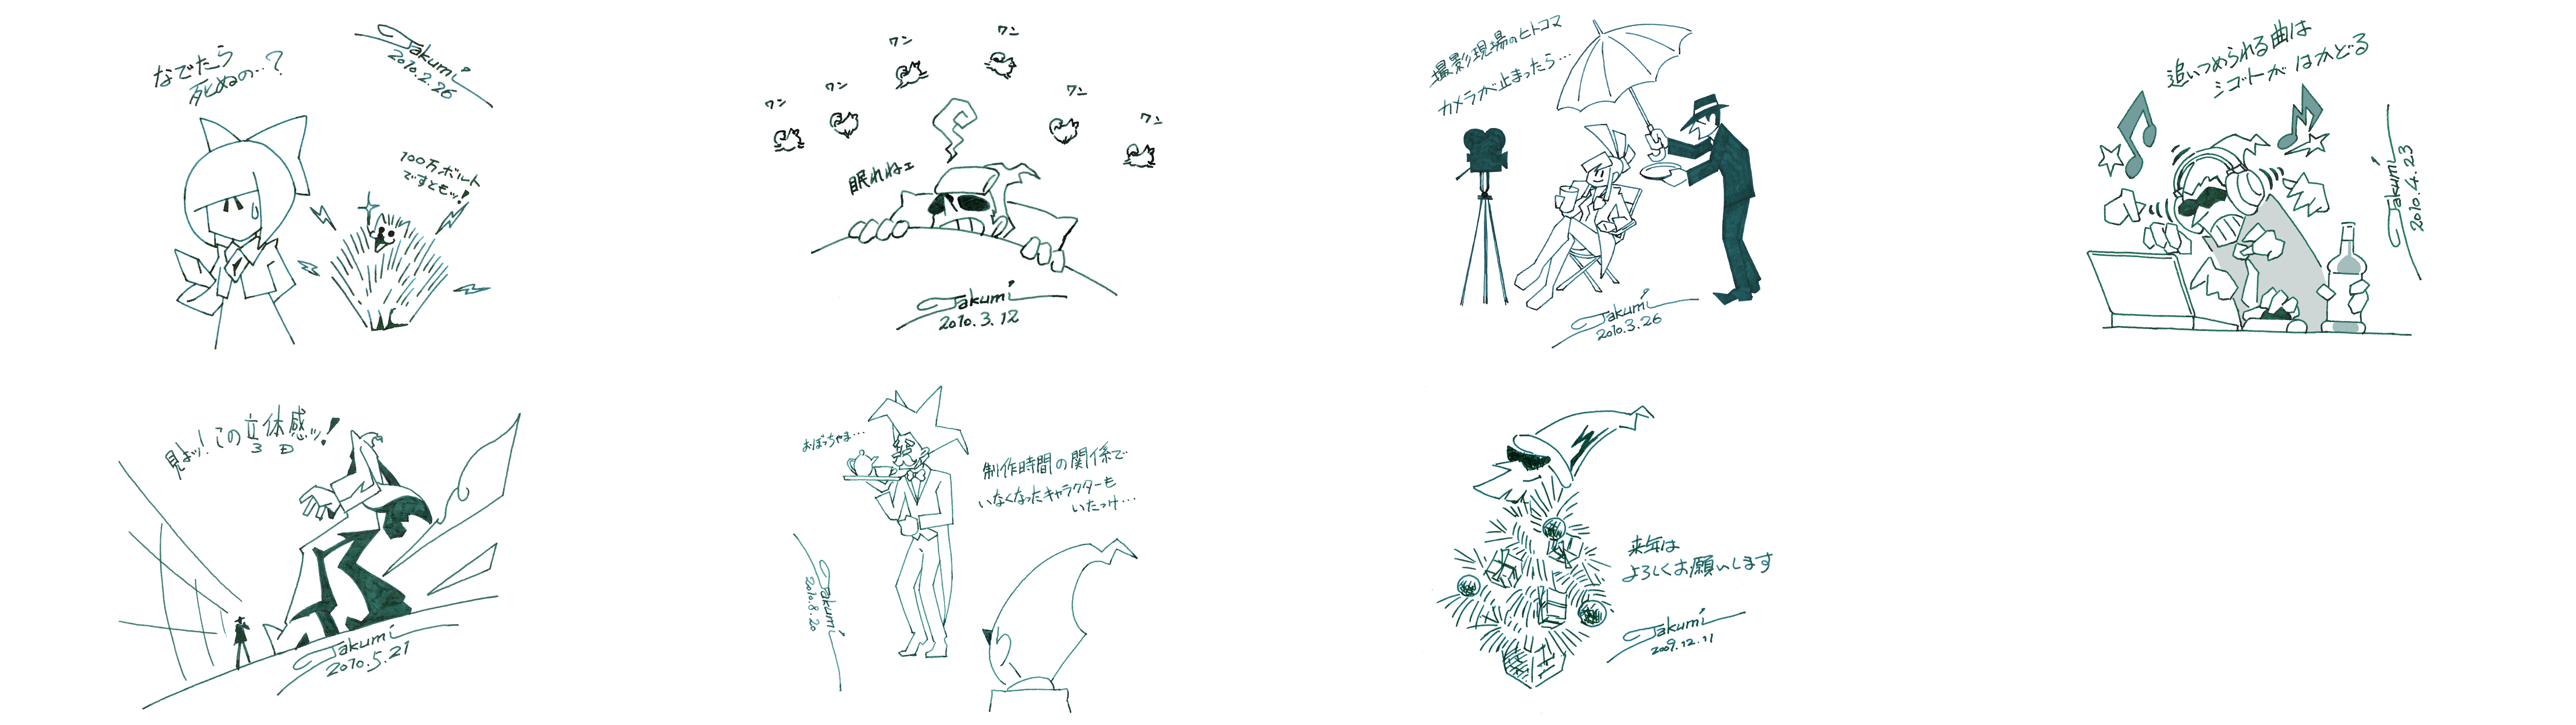 Part 4 - Takumi's Drawings